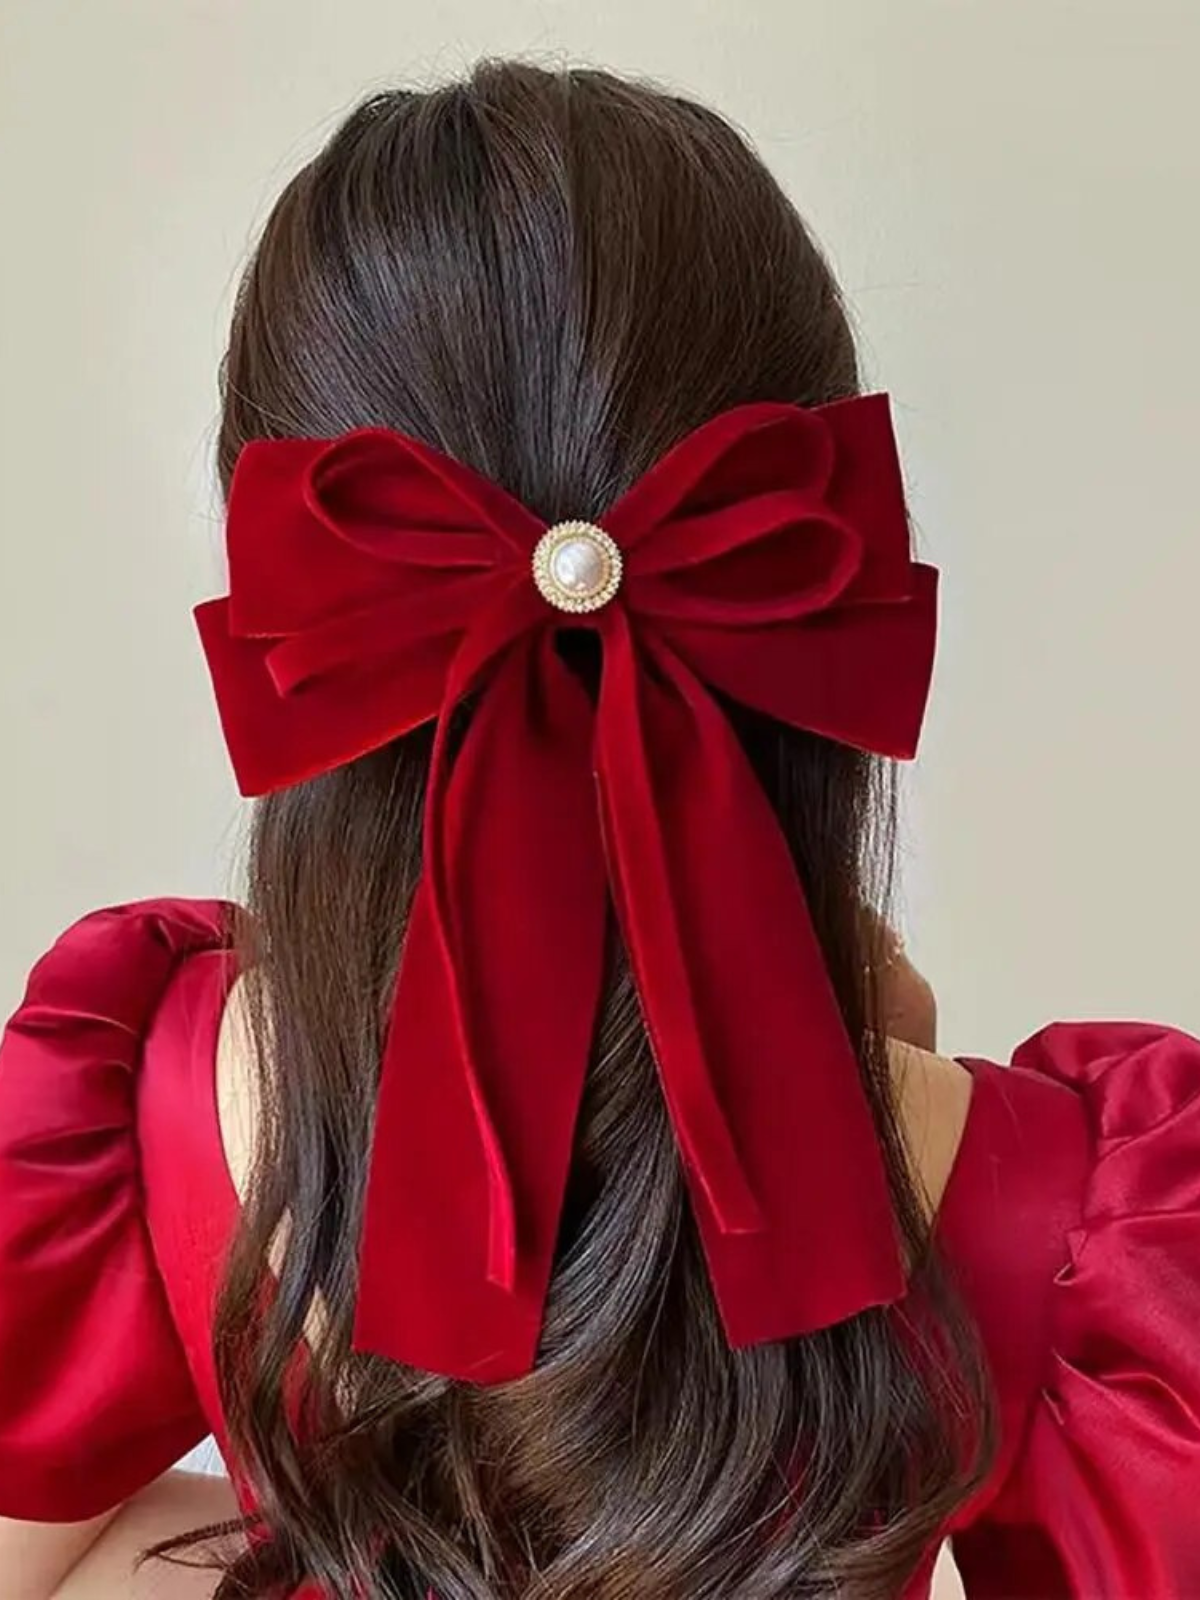 Mia Belle Girls Red Velvet Hair Bow | Girls Accessories